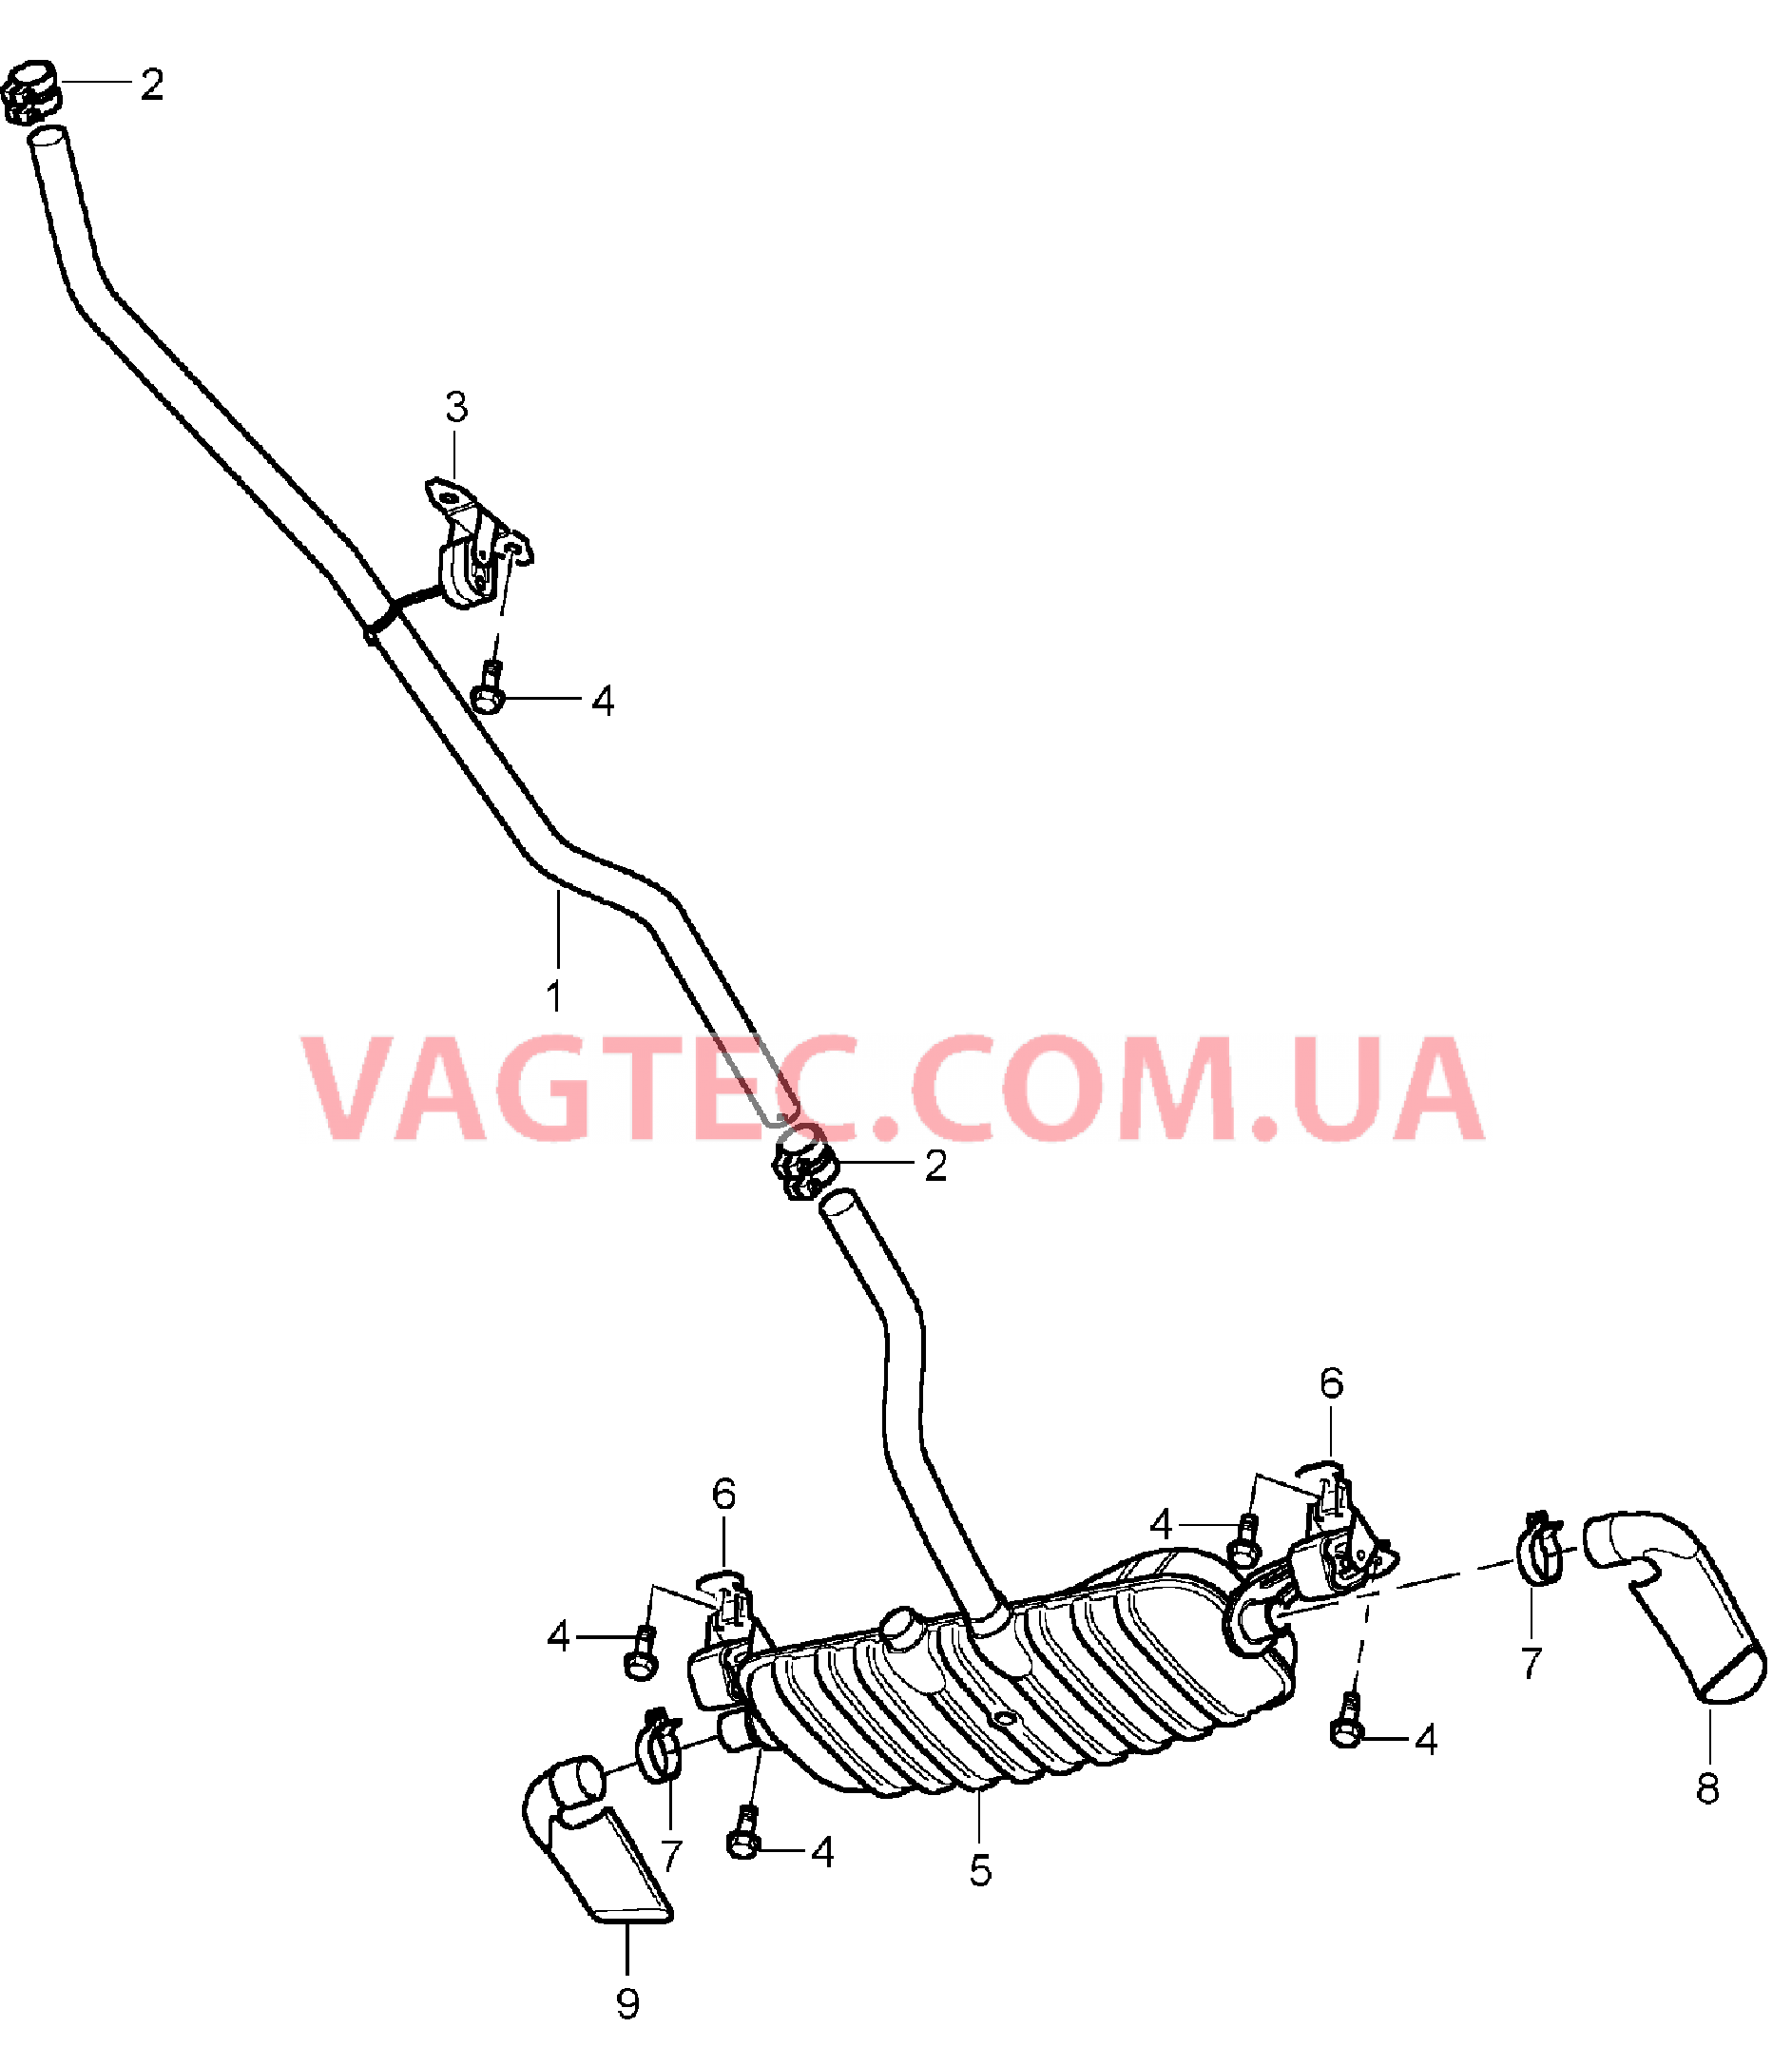 202-012 Выпускная система, Предварительный глушитель, Основной глушитель, Выпускная труба
						
						ID9J для PORSCHE Cayenne 2003-2006